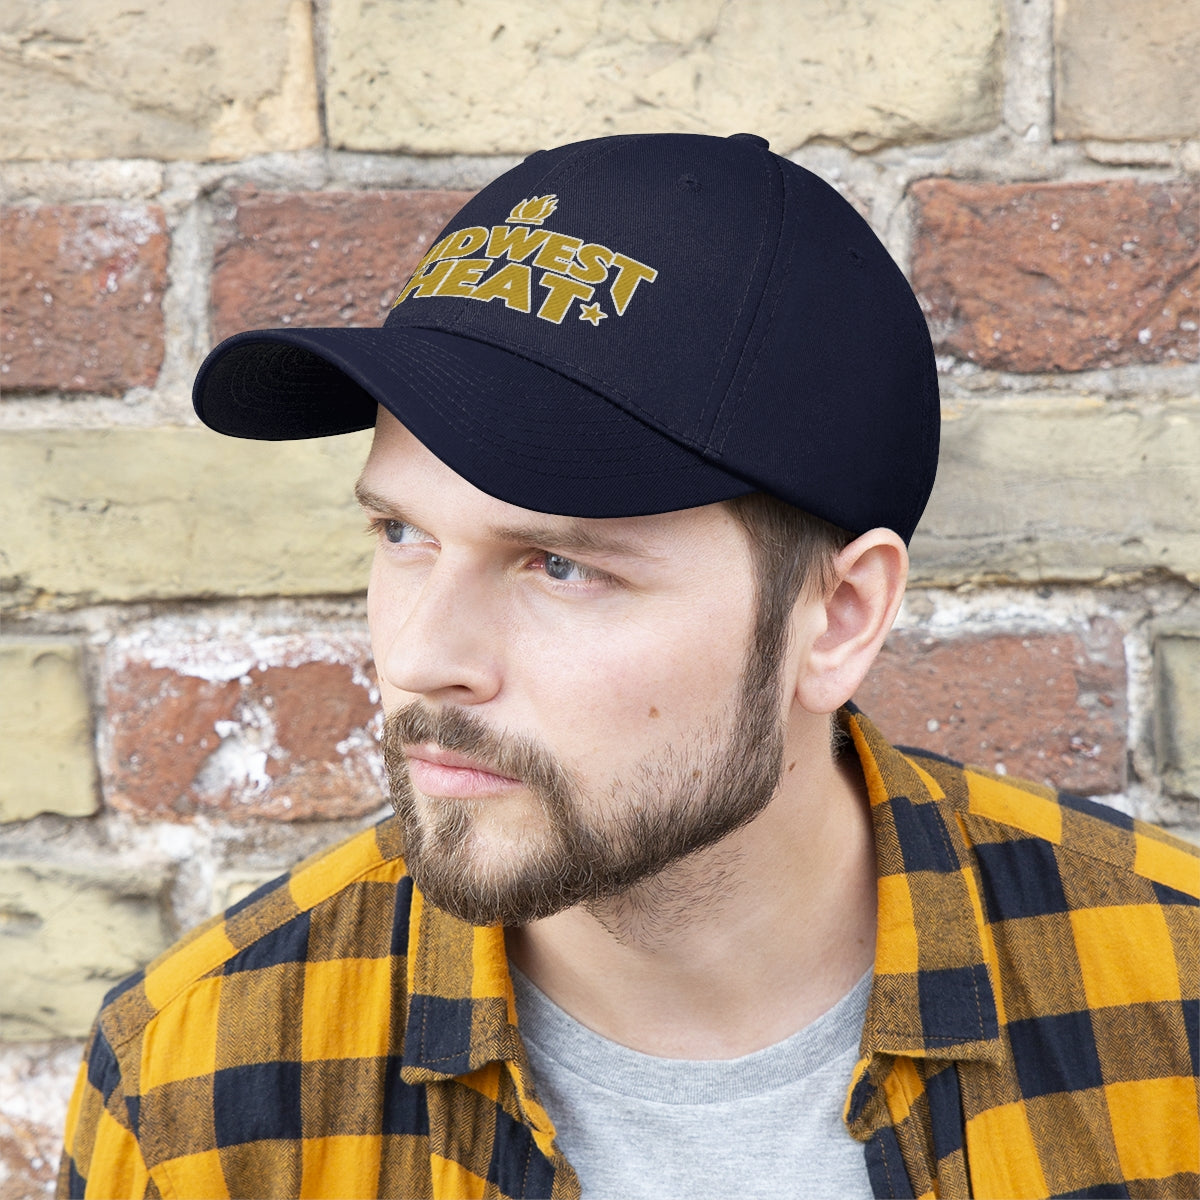 Midwest Heat - Gold Stitch Unisex Twill Hat